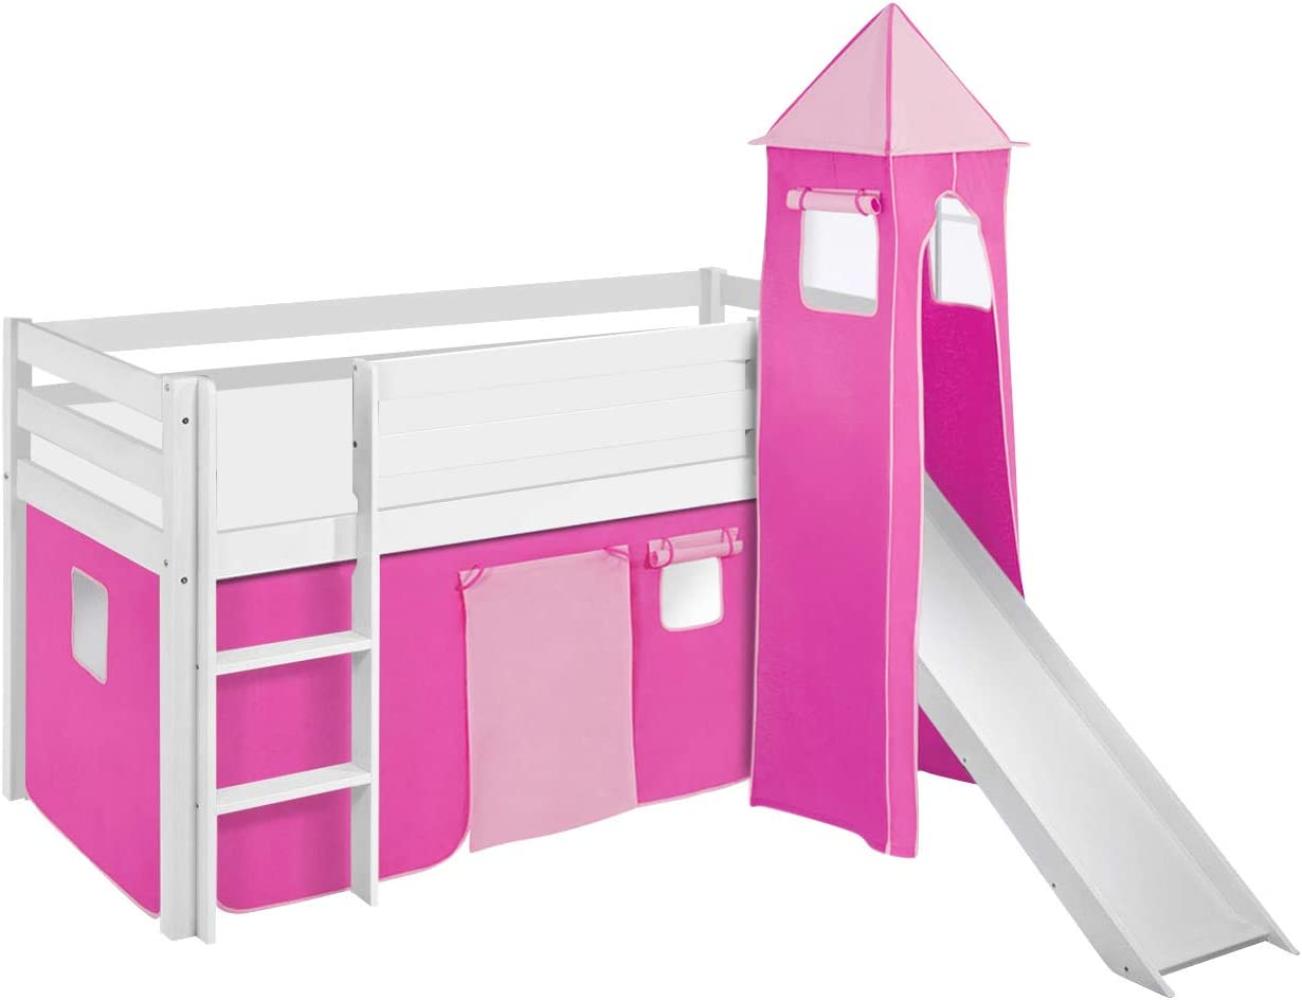 Lilokids 'Jelle' Spielbett 90 x 190 cm, Rosa, Kiefer massiv, mit Turm, Rutsche und Vorhang Bild 1